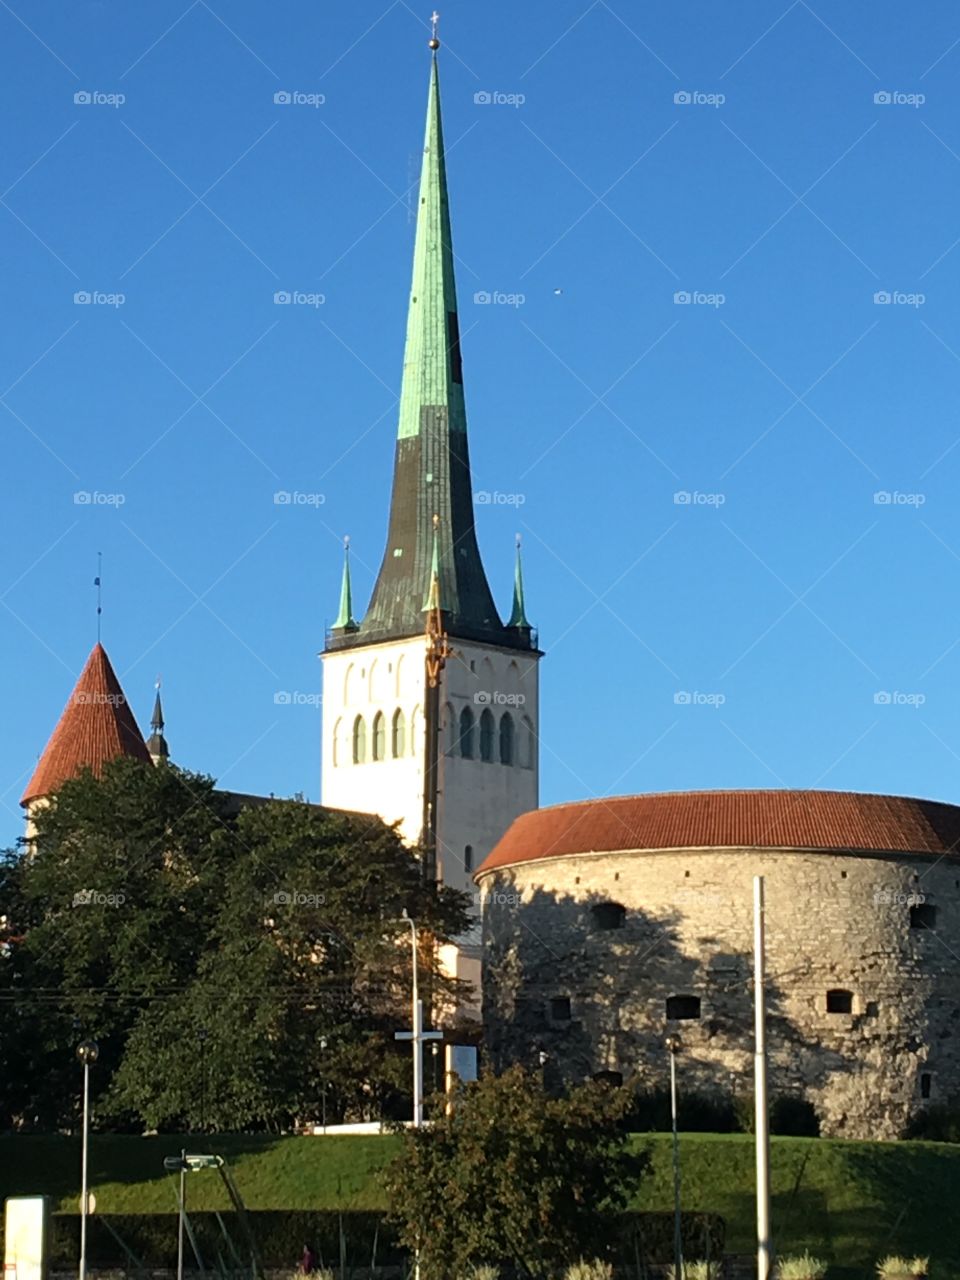 Tallinn church and tower 